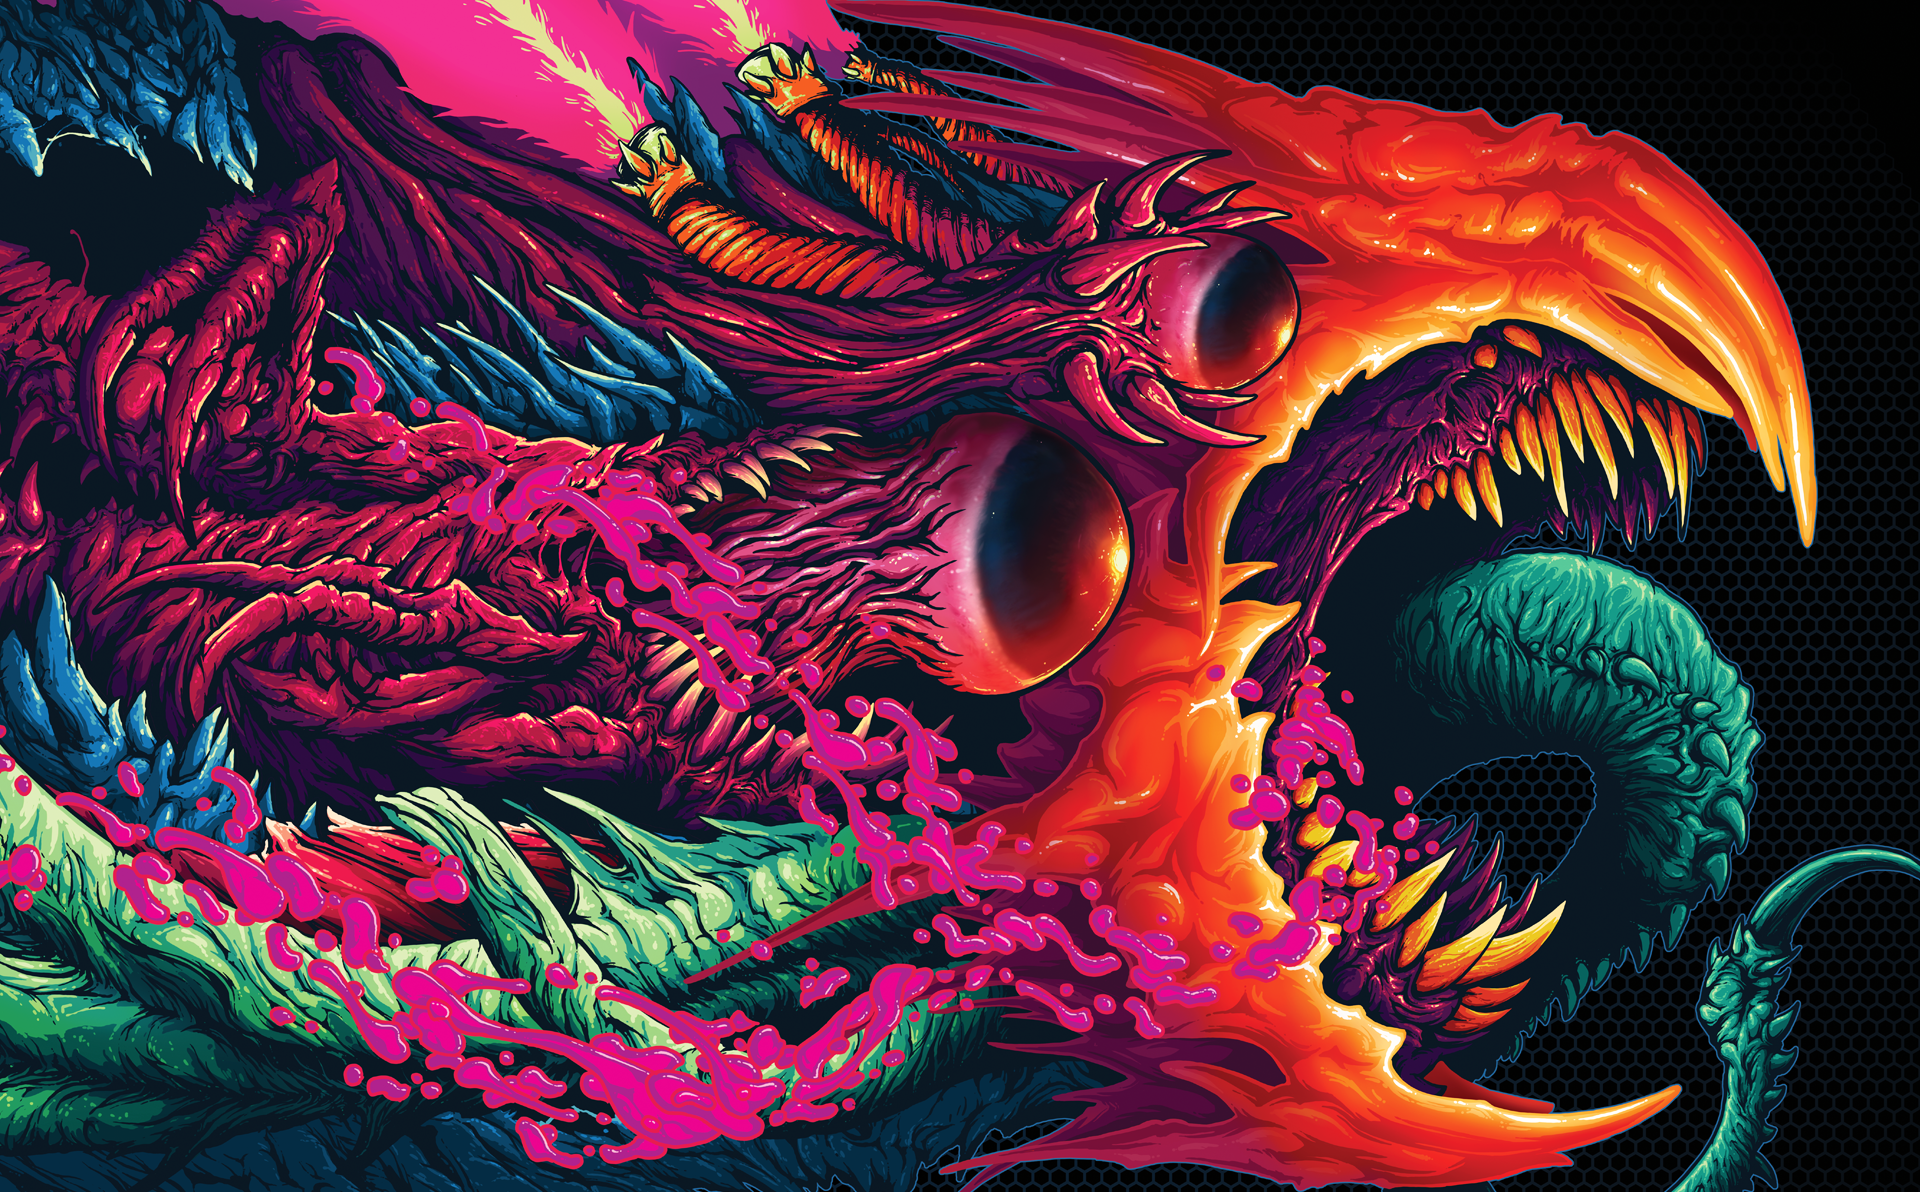 hyper beast wallpaper,drachen,erfundener charakter,cg kunstwerk,mythische kreatur,illustration